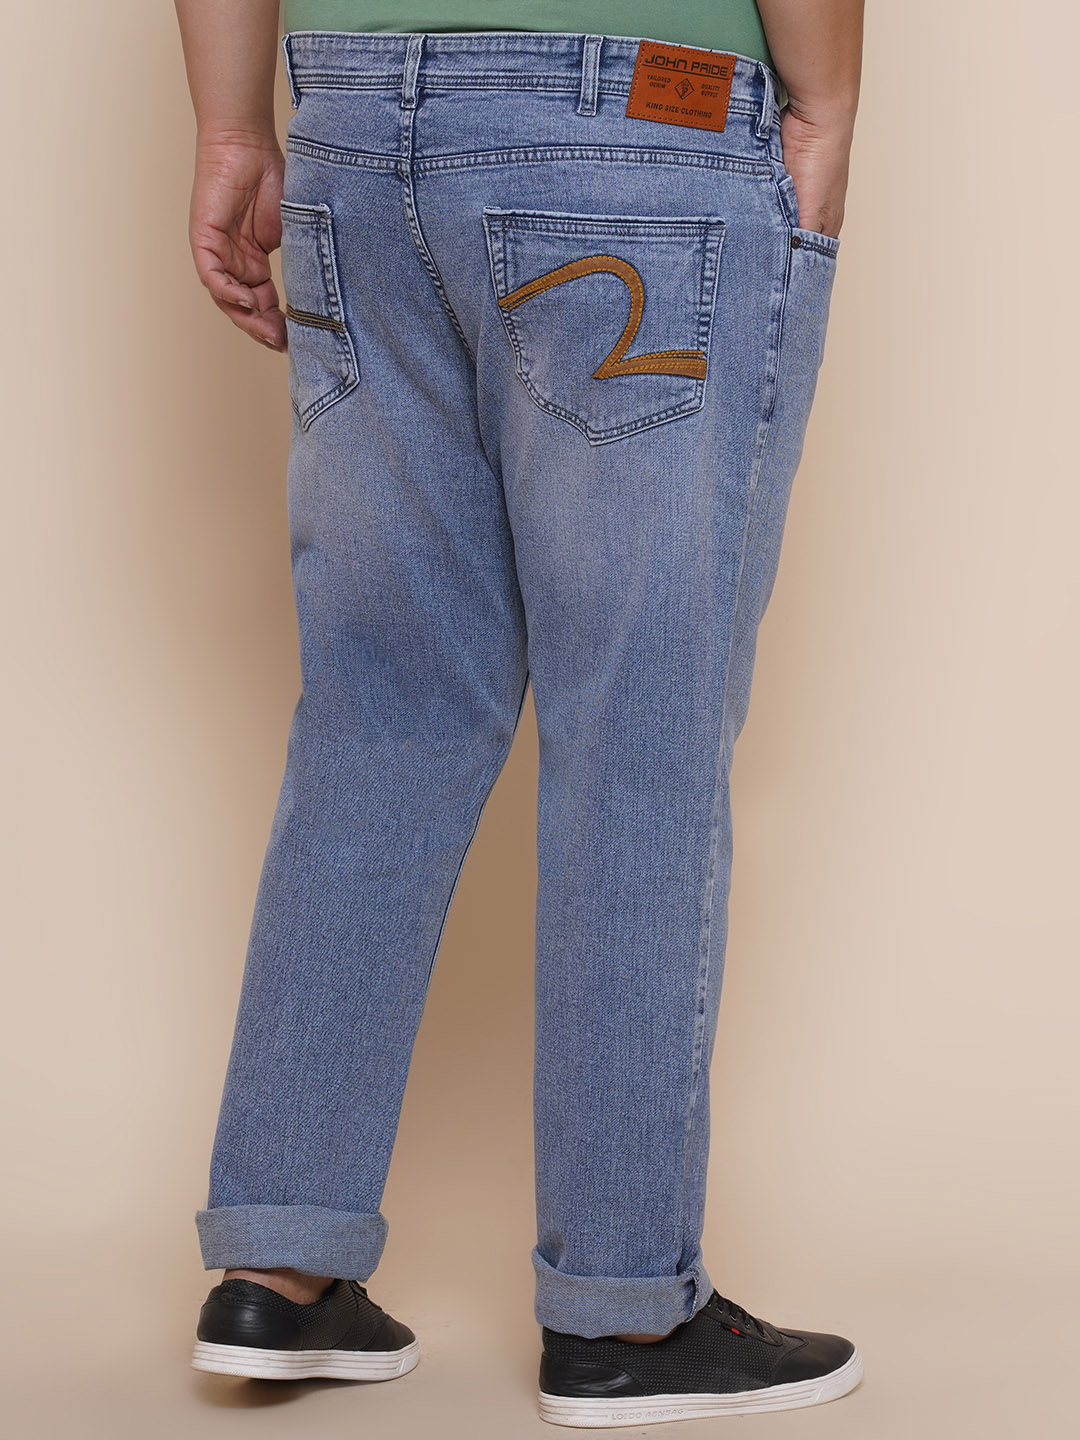 bottomwear/jeans/EJPJ25081/ejpj25081-5.jpg